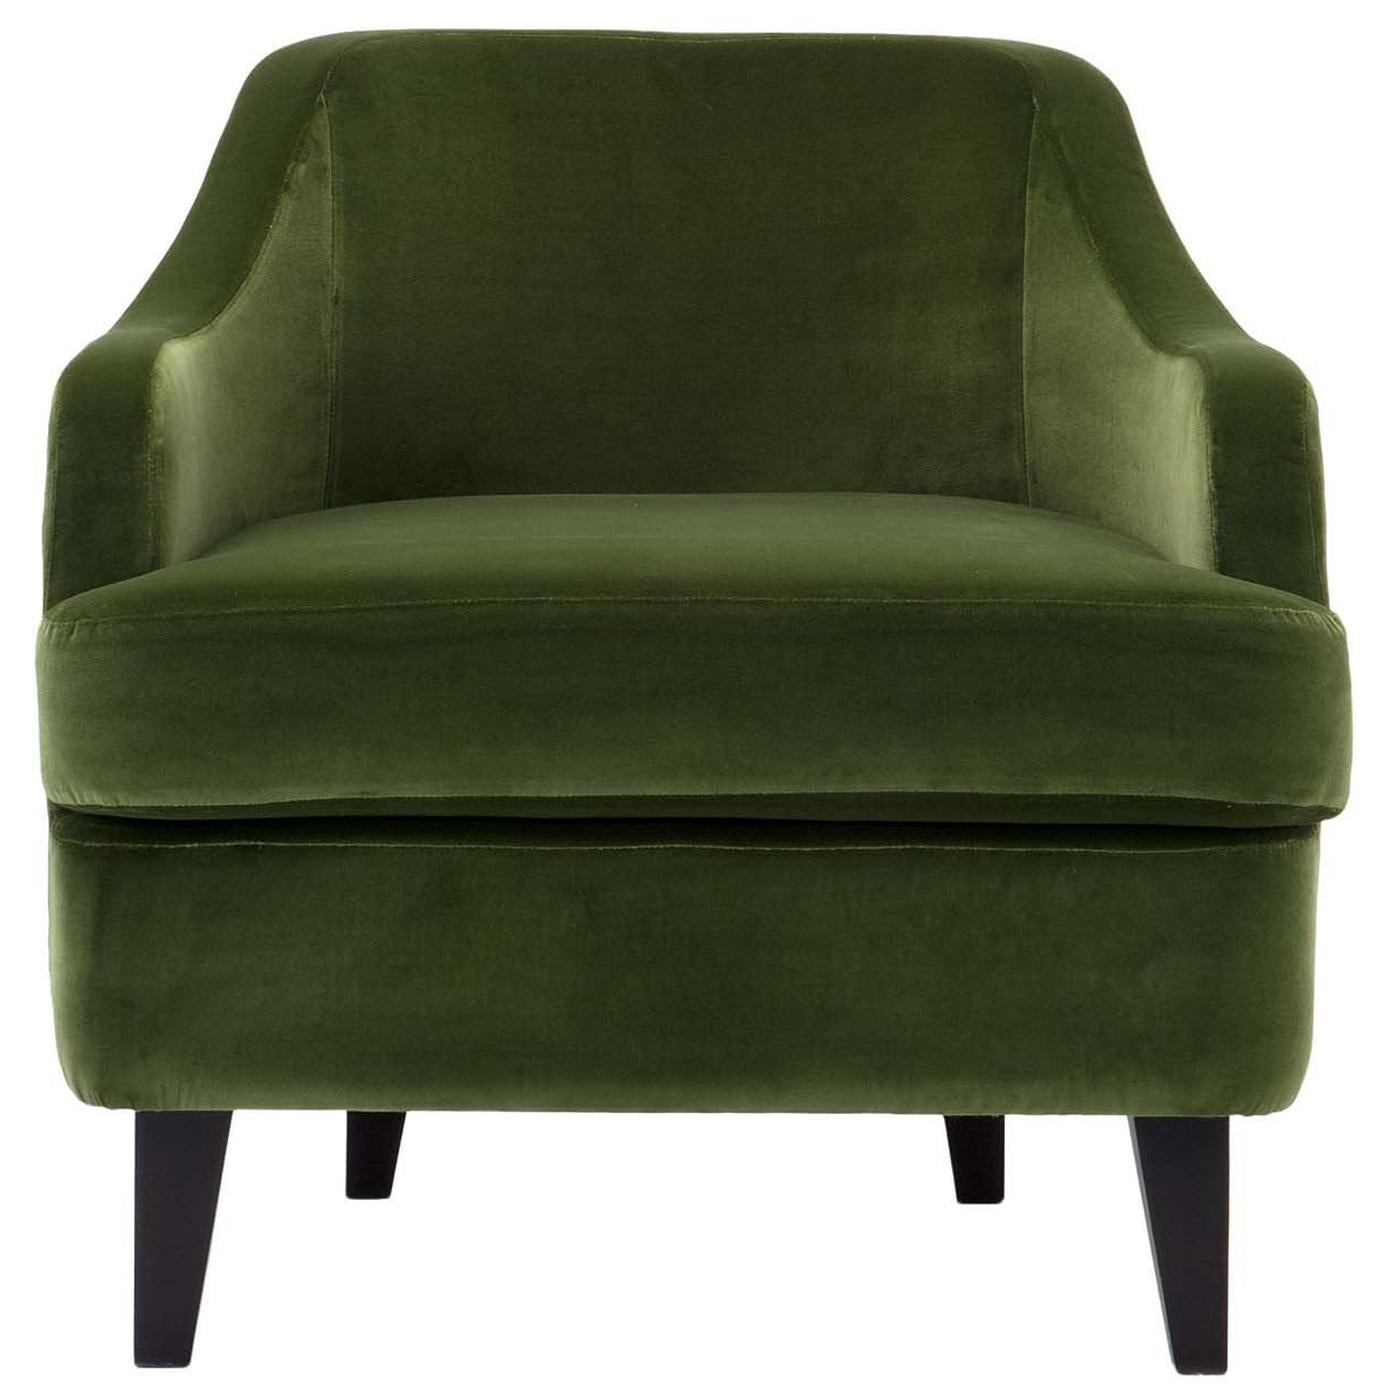 Nor Green Armchair